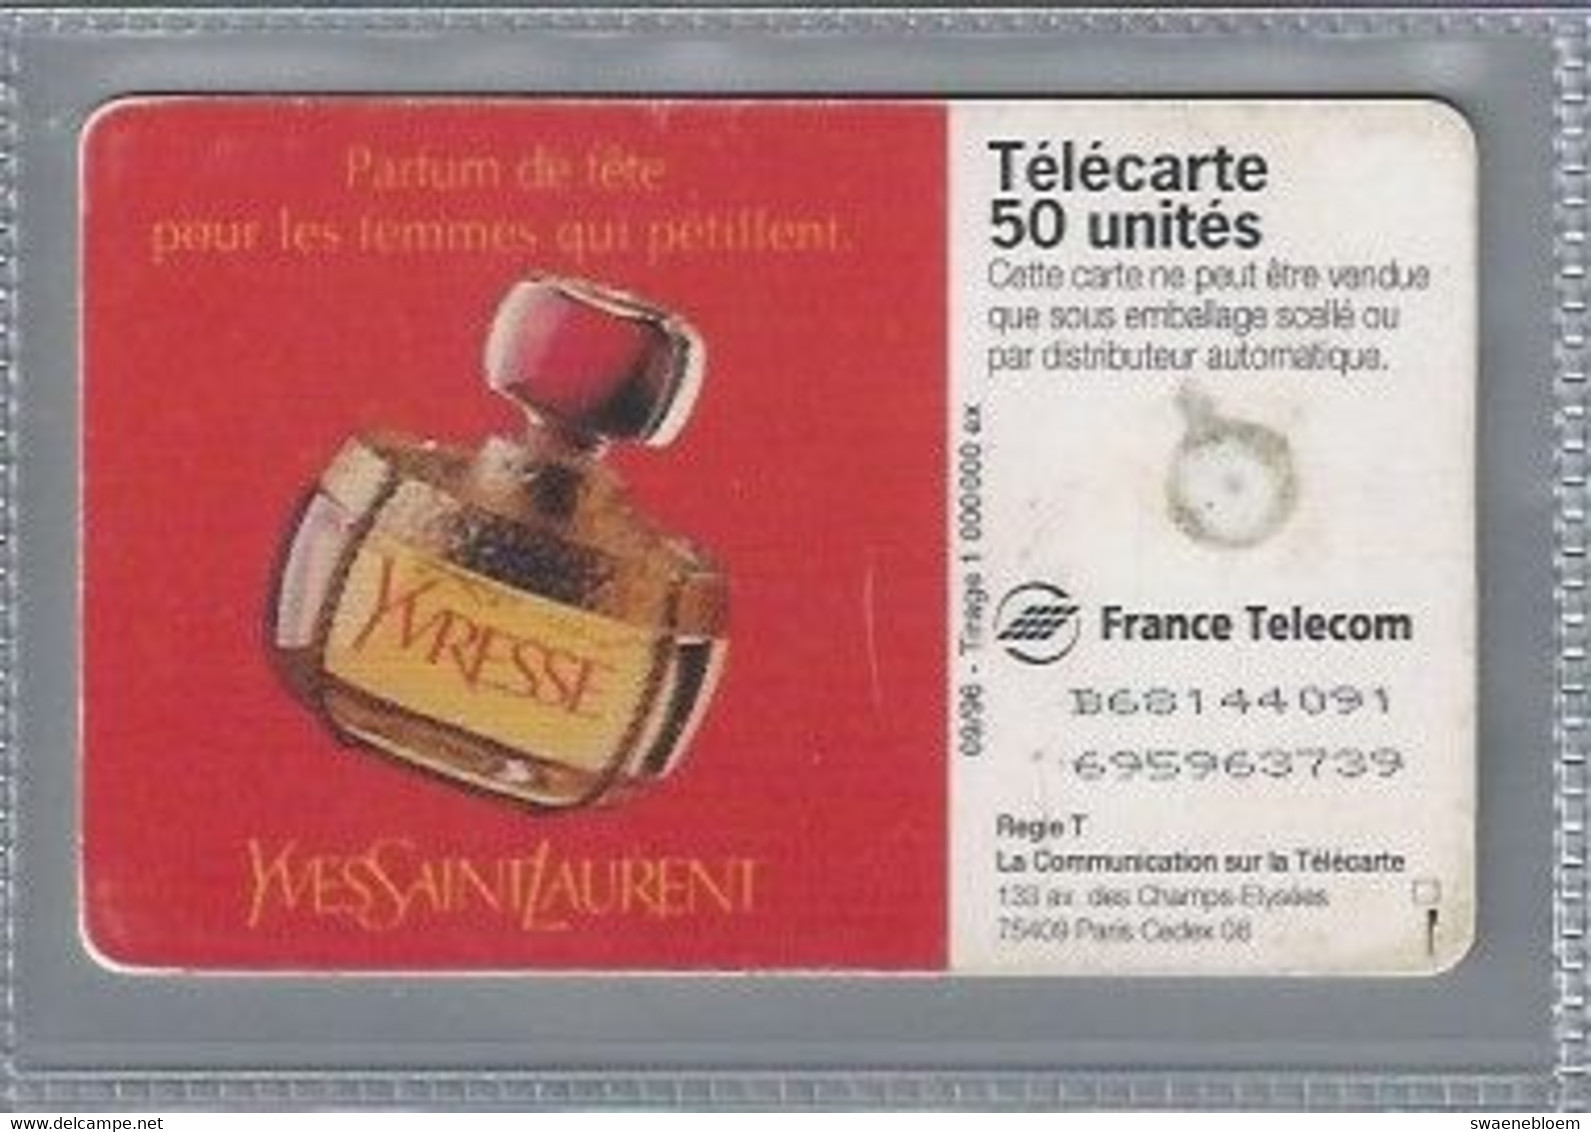 FR.- France Telecom. Télécarte. PARFUM YVRESSE. YVES SAINT LAURENT. .50 Unités. - Perfumes